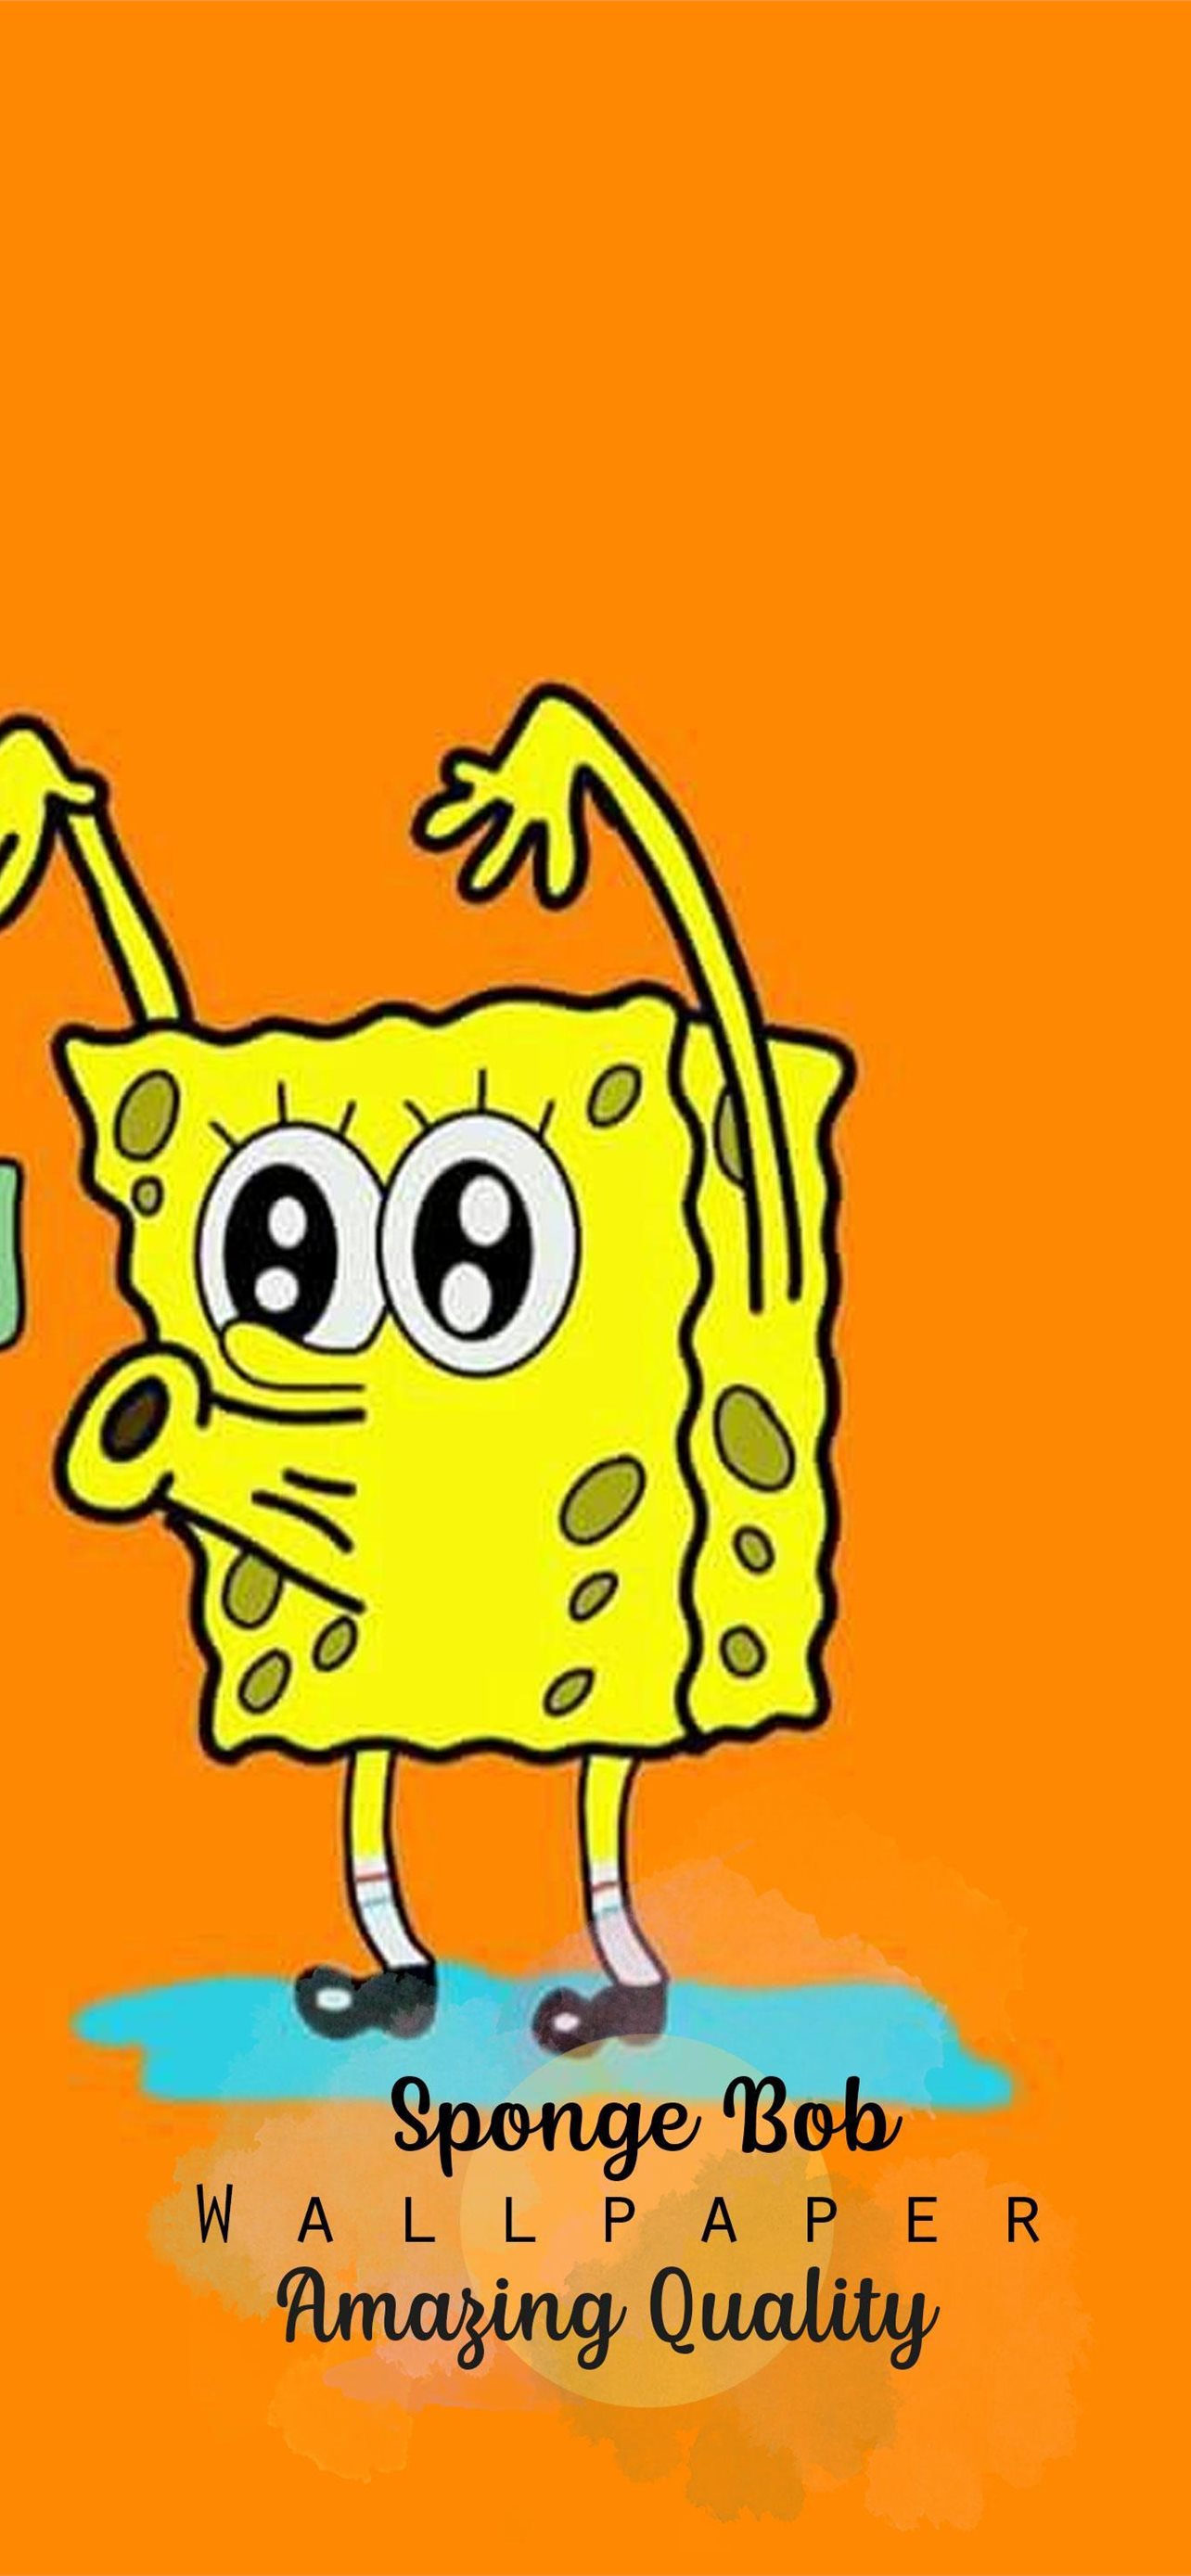 Download Spongebob Aesthetic Cute Matching Best Friend Wallper Idea  Wallpaper  Wallpaperscom